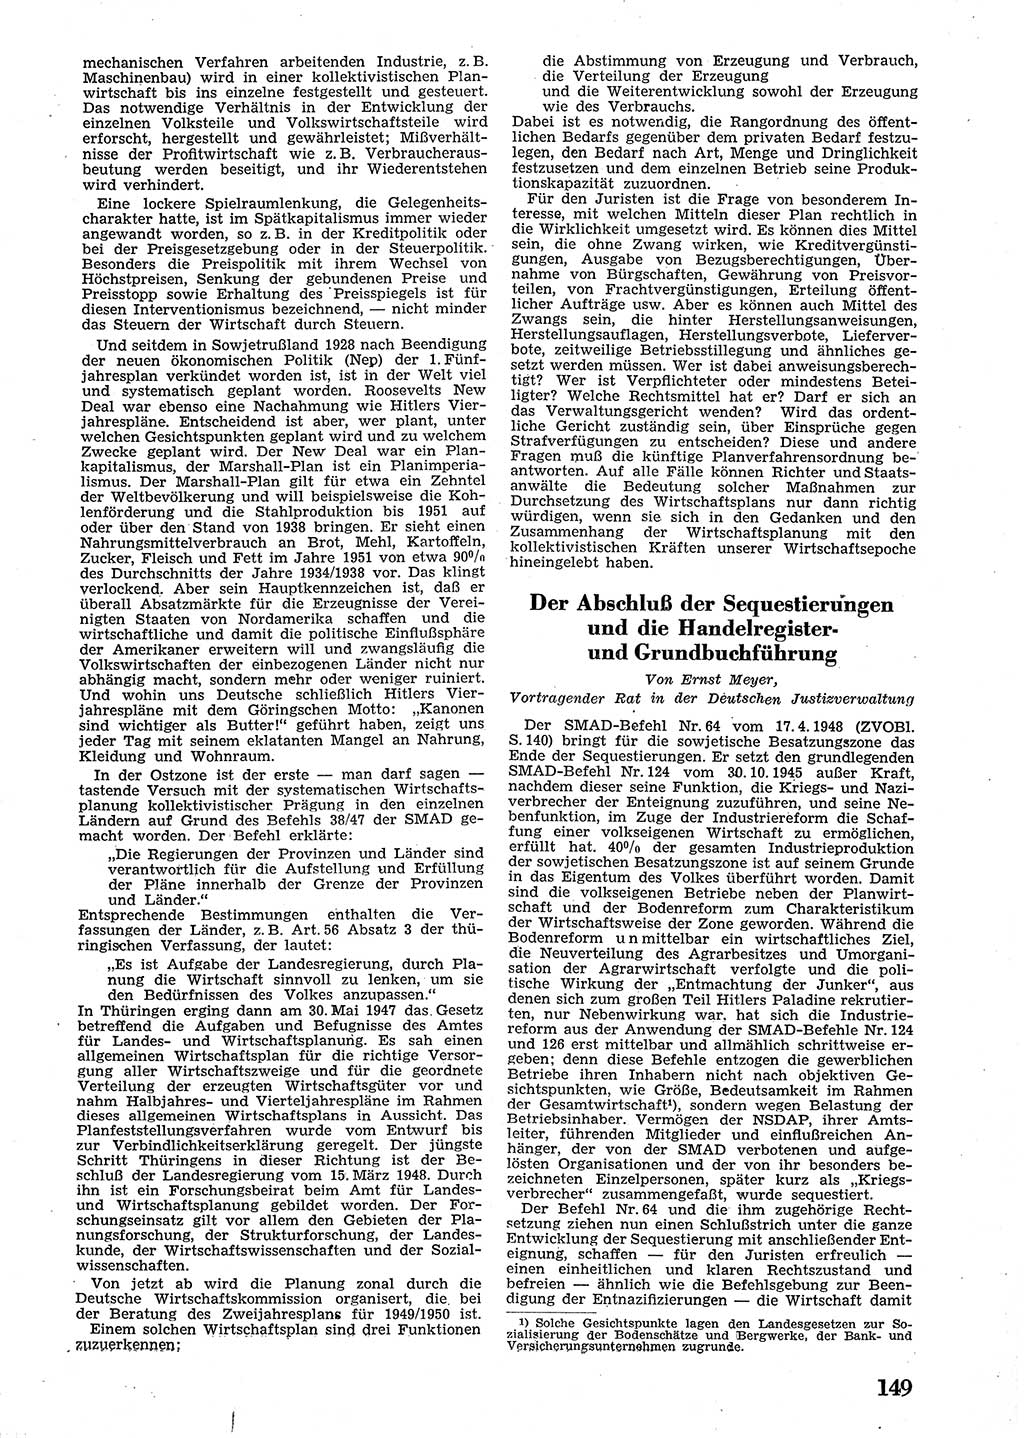 Neue Justiz (NJ), Zeitschrift für Recht und Rechtswissenschaft [Sowjetische Besatzungszone (SBZ) Deutschland], 2. Jahrgang 1948, Seite 149 (NJ SBZ Dtl. 1948, S. 149)